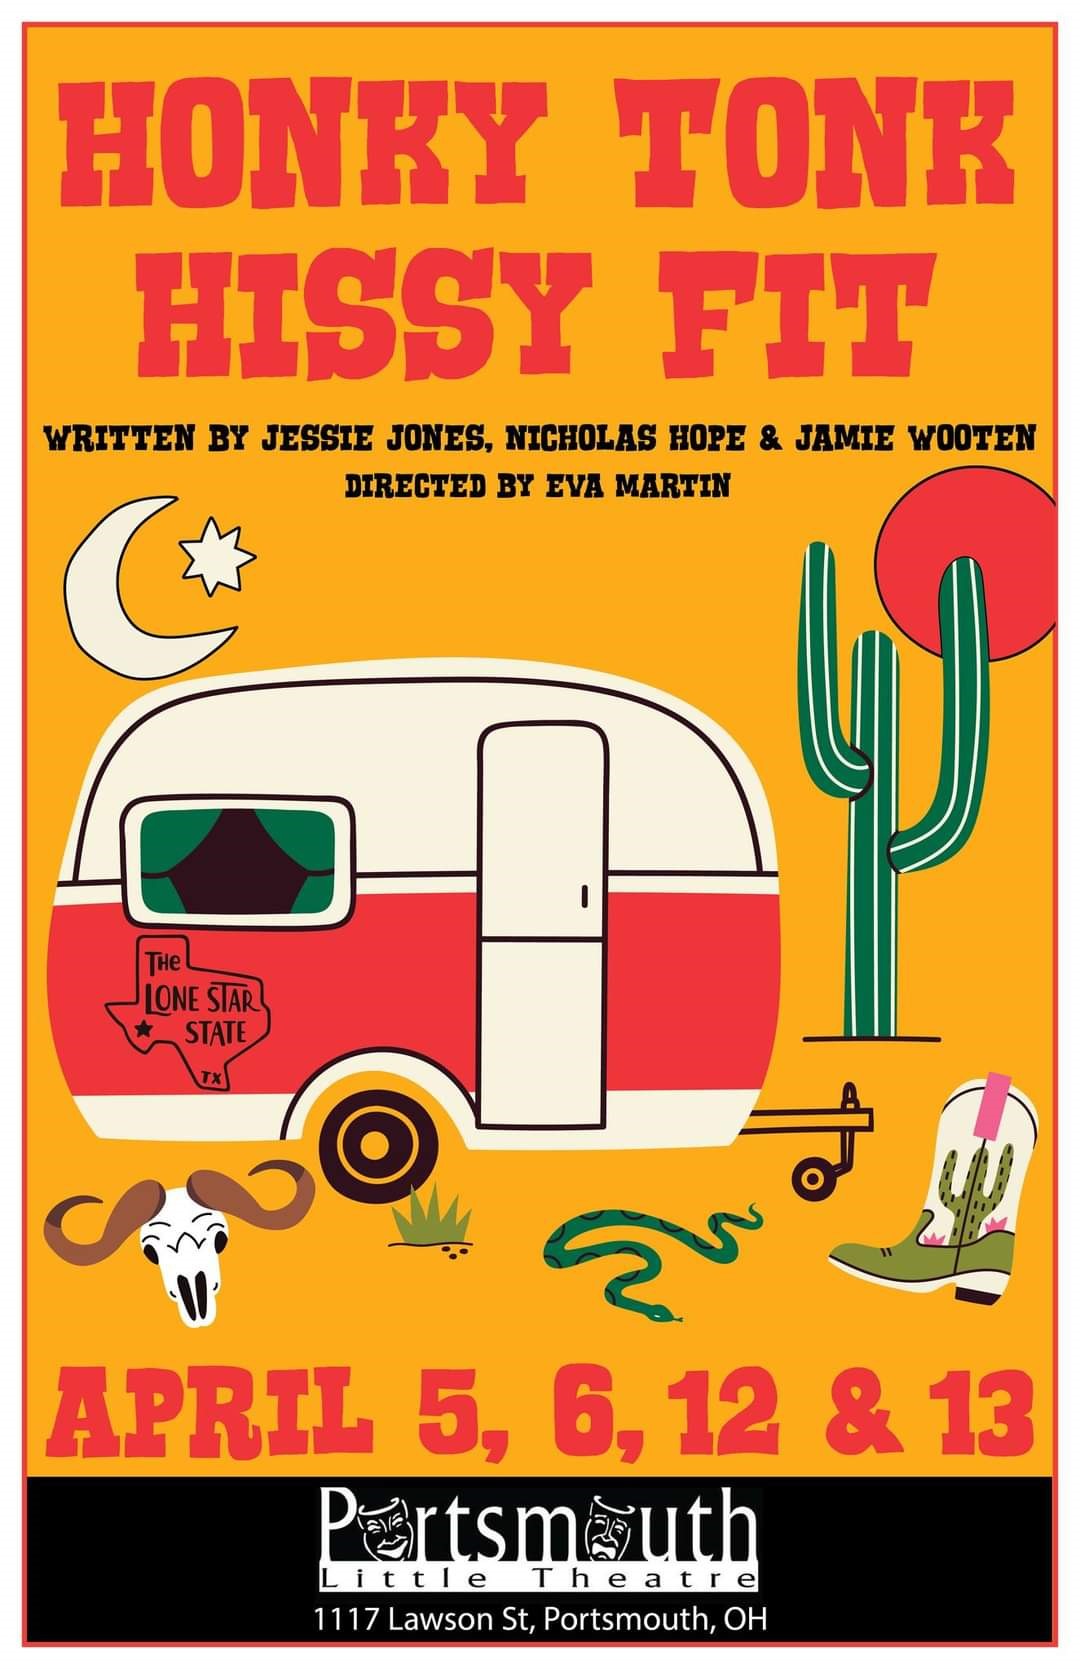 Honky Tonk Hissy Fit  on avr. 06, 19:30@Portsmouth Little Theatre - Choisissez un siège,Achetez des billets et obtenez des informations surPortsmouth Little Theatre 